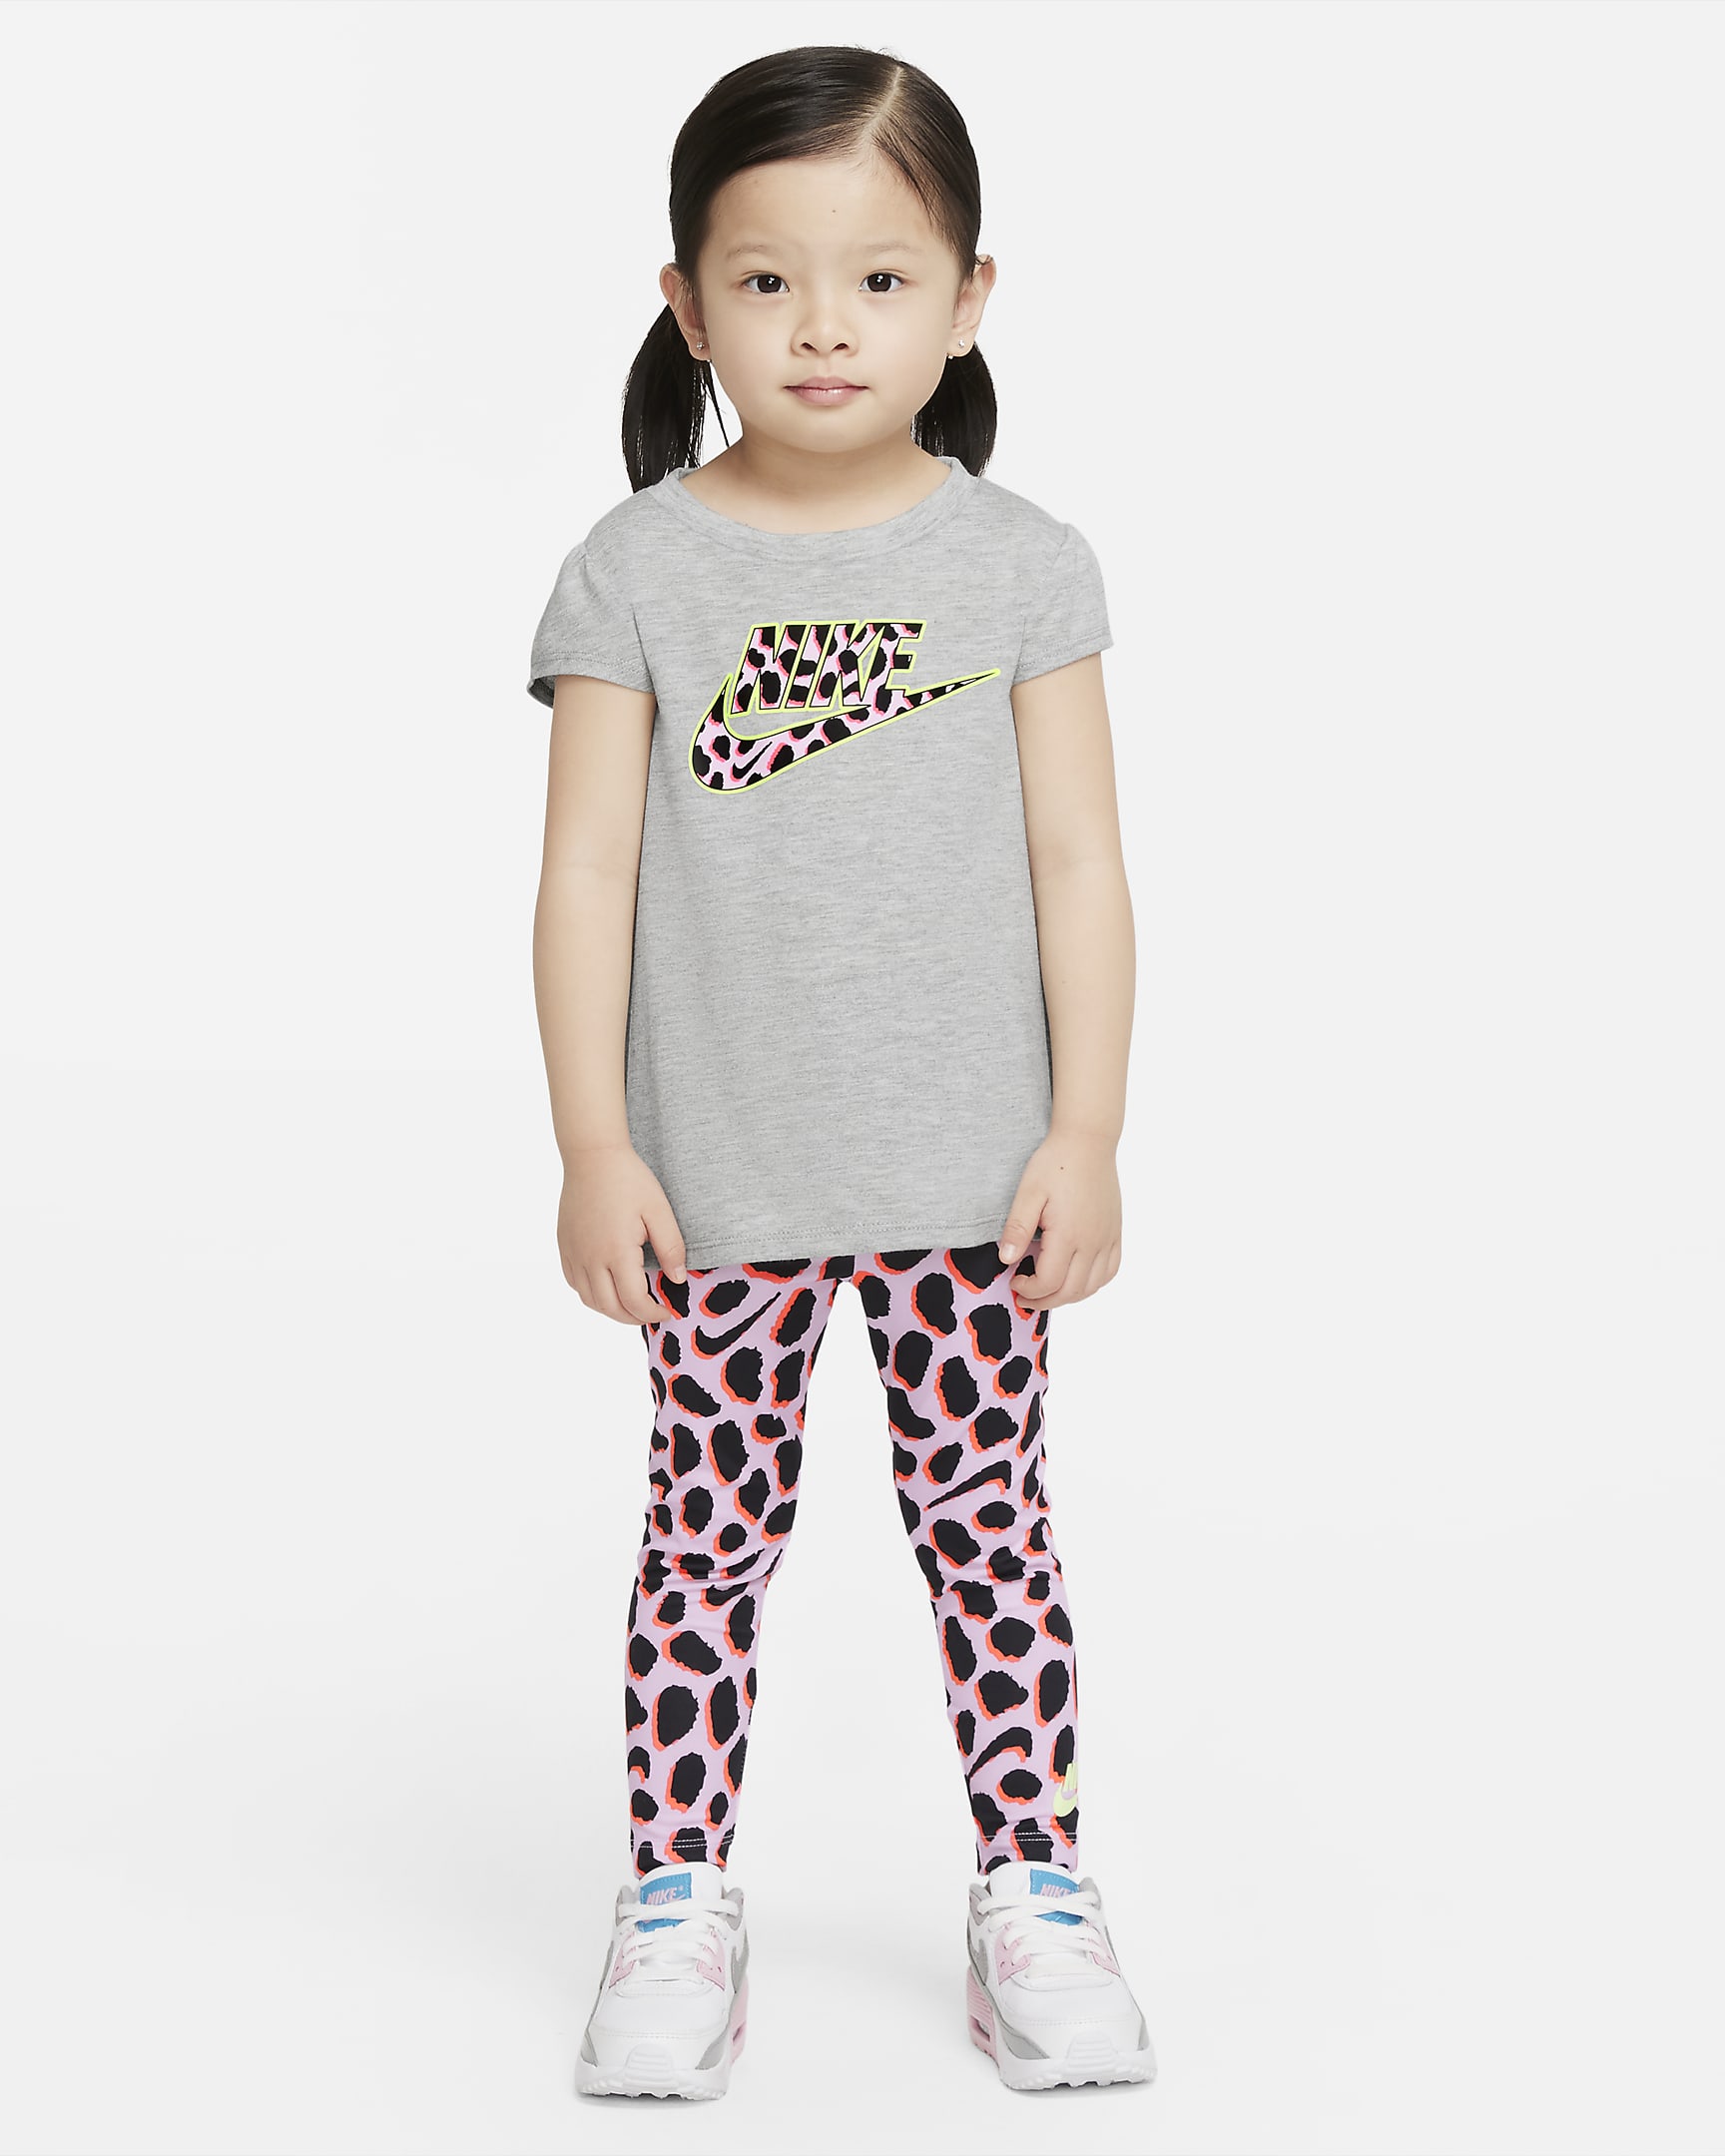 Nike Toddler T-Shirt and Leggings Set. Nike NL